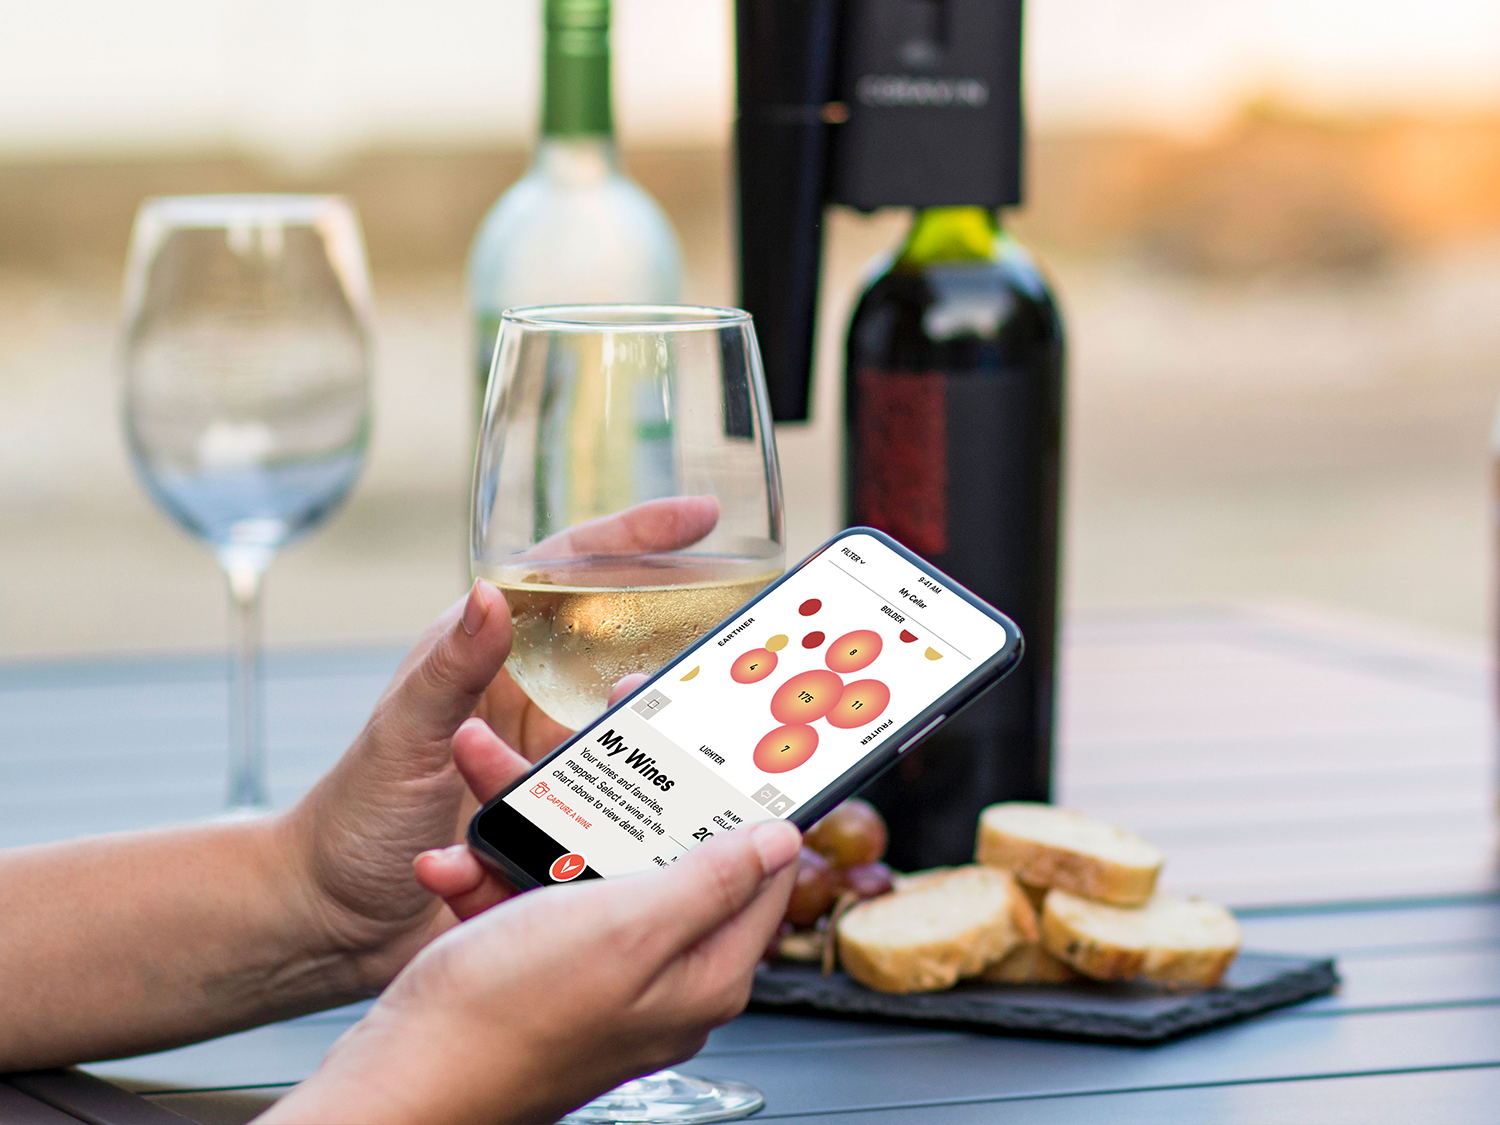 Une personne tenant un verre de vin dans une main et un téléphone dans l’autre sur lequel s’affiche la carte des saveurs de l’application Coravin Moments, avec en arrière-plan le système de préservation du vin Coravin Model Eleven placé sur une bouteille.